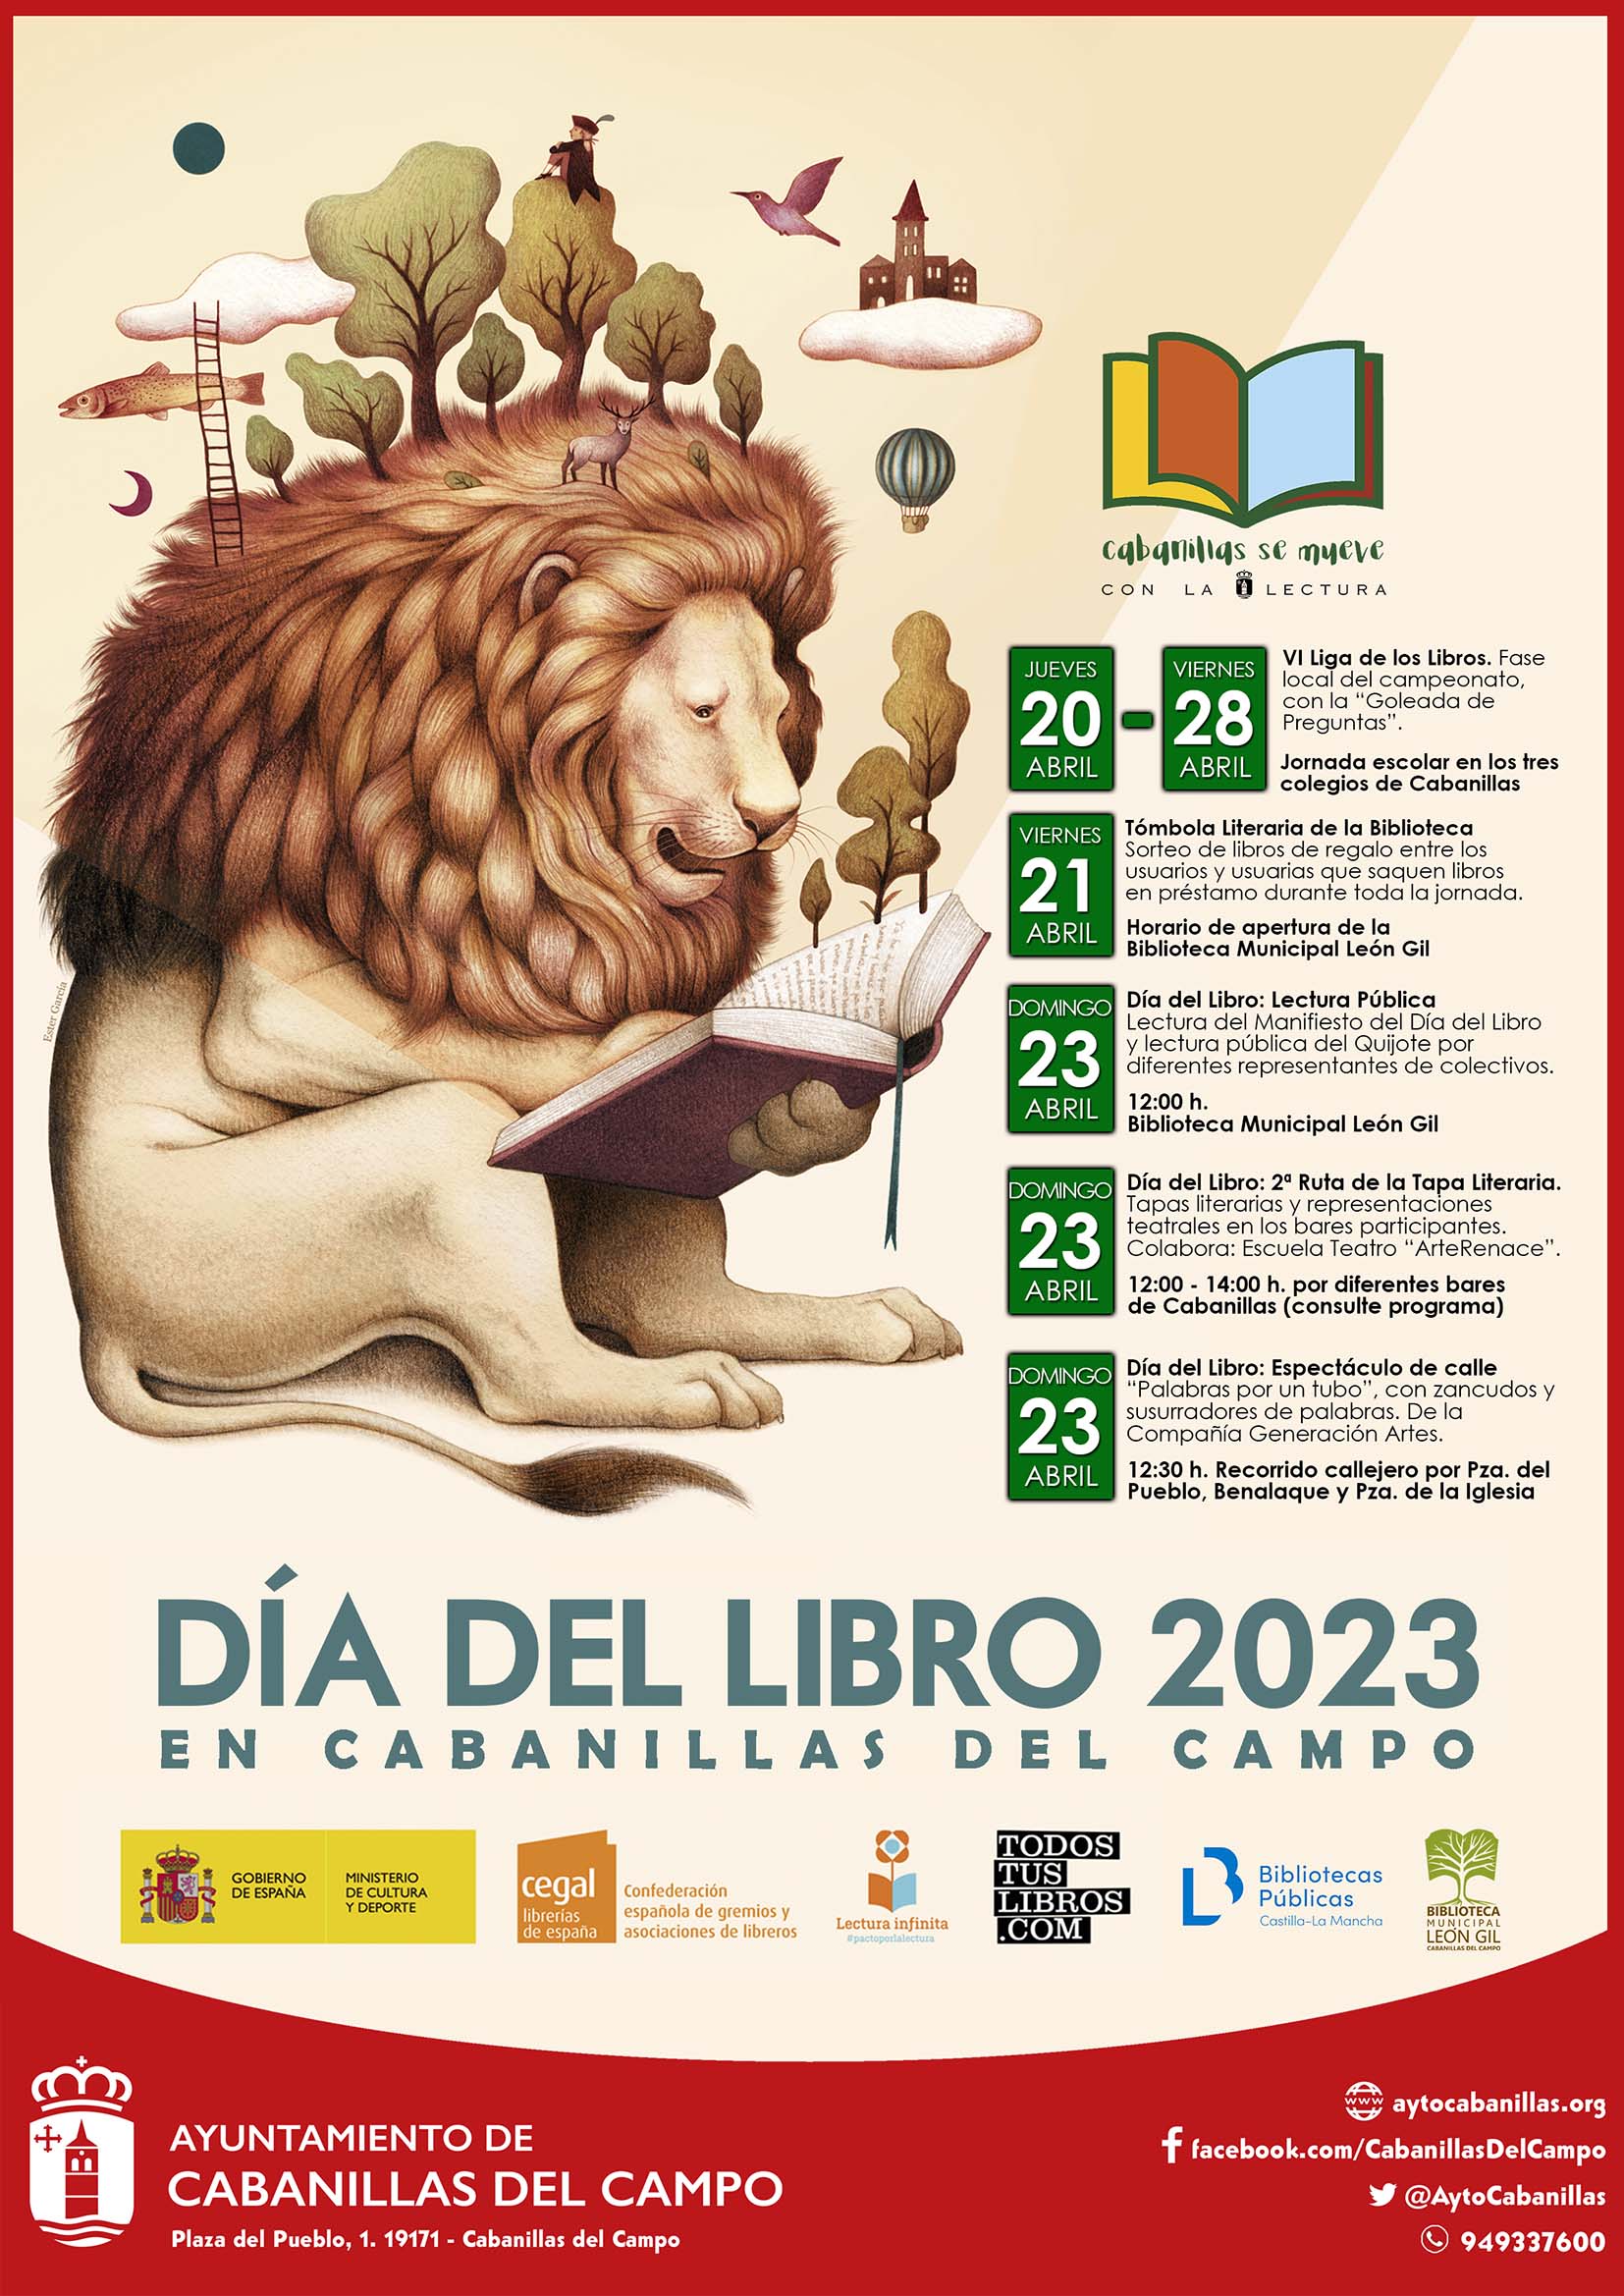 Celebra el Día del Libro 2023 en Cabanillas con la II Ruta de la Tapa Literaria y actividades culturales 